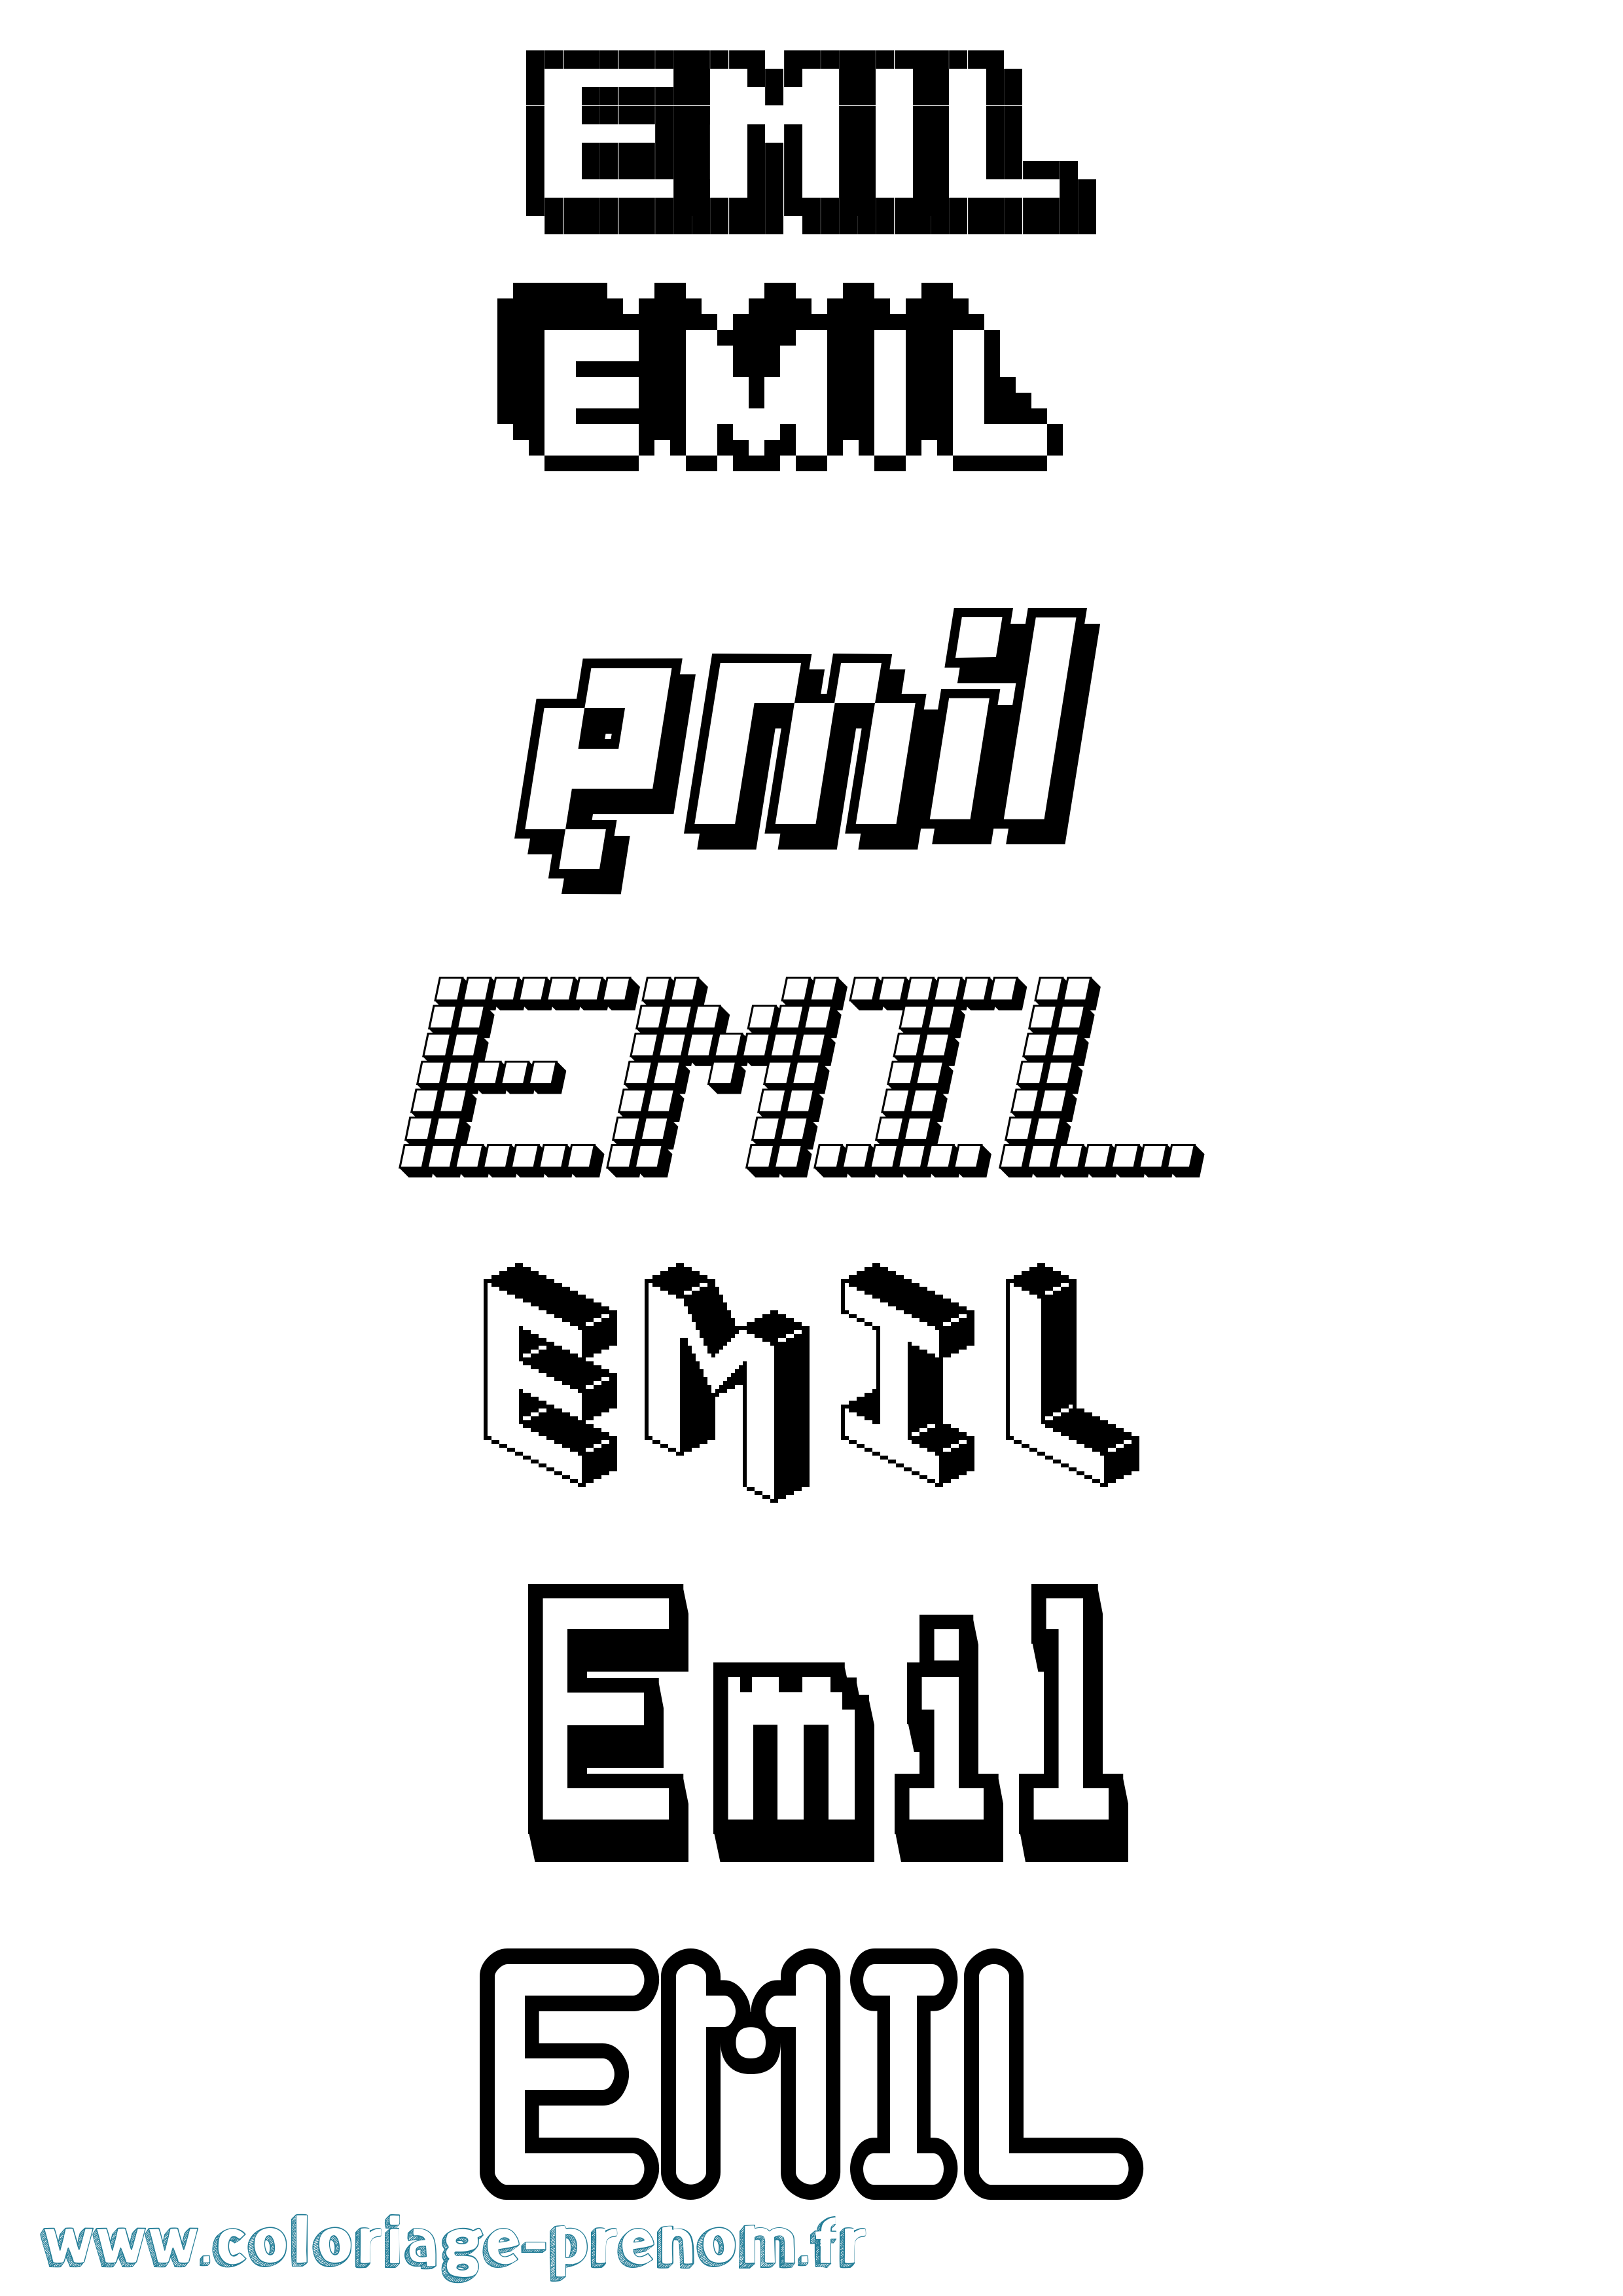 Coloriage prénom Emil Pixel